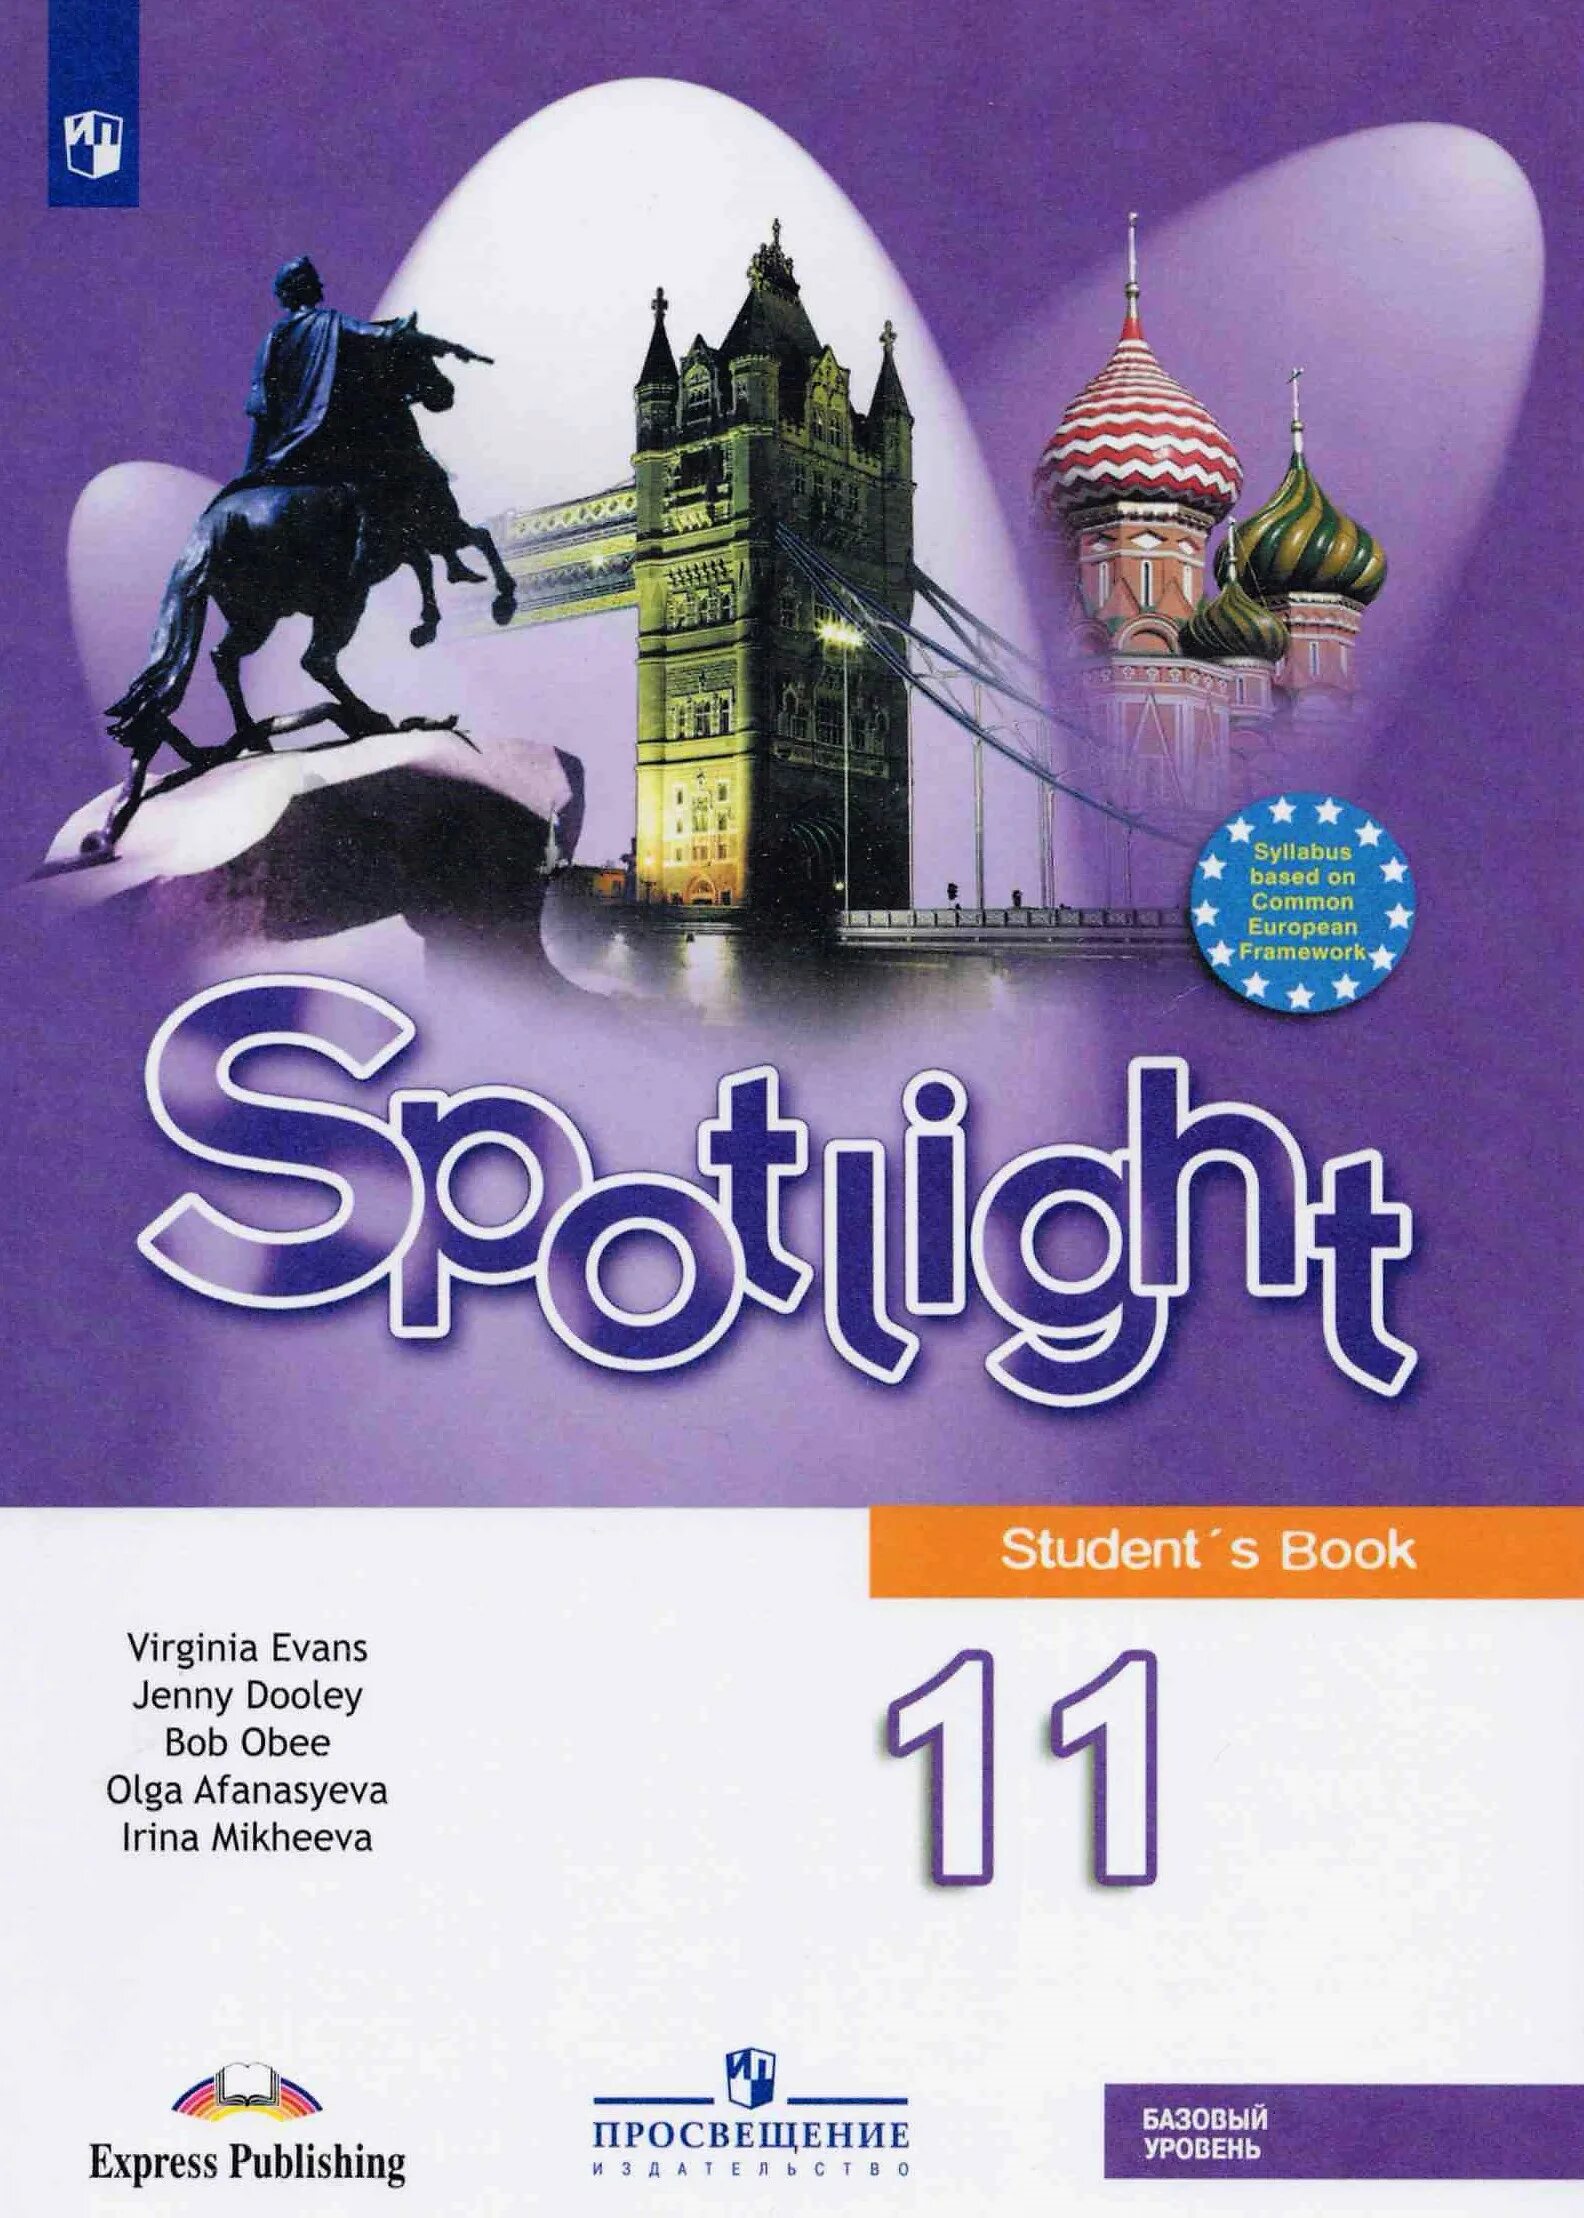 Английский язык 11 класс student's book. Spotlight 11 класс учебник. Английский в фокусе 11 класс учебник. Английский язык 11 класс Spotlight ваулина. Английский спотлайт 11 класс учебник.